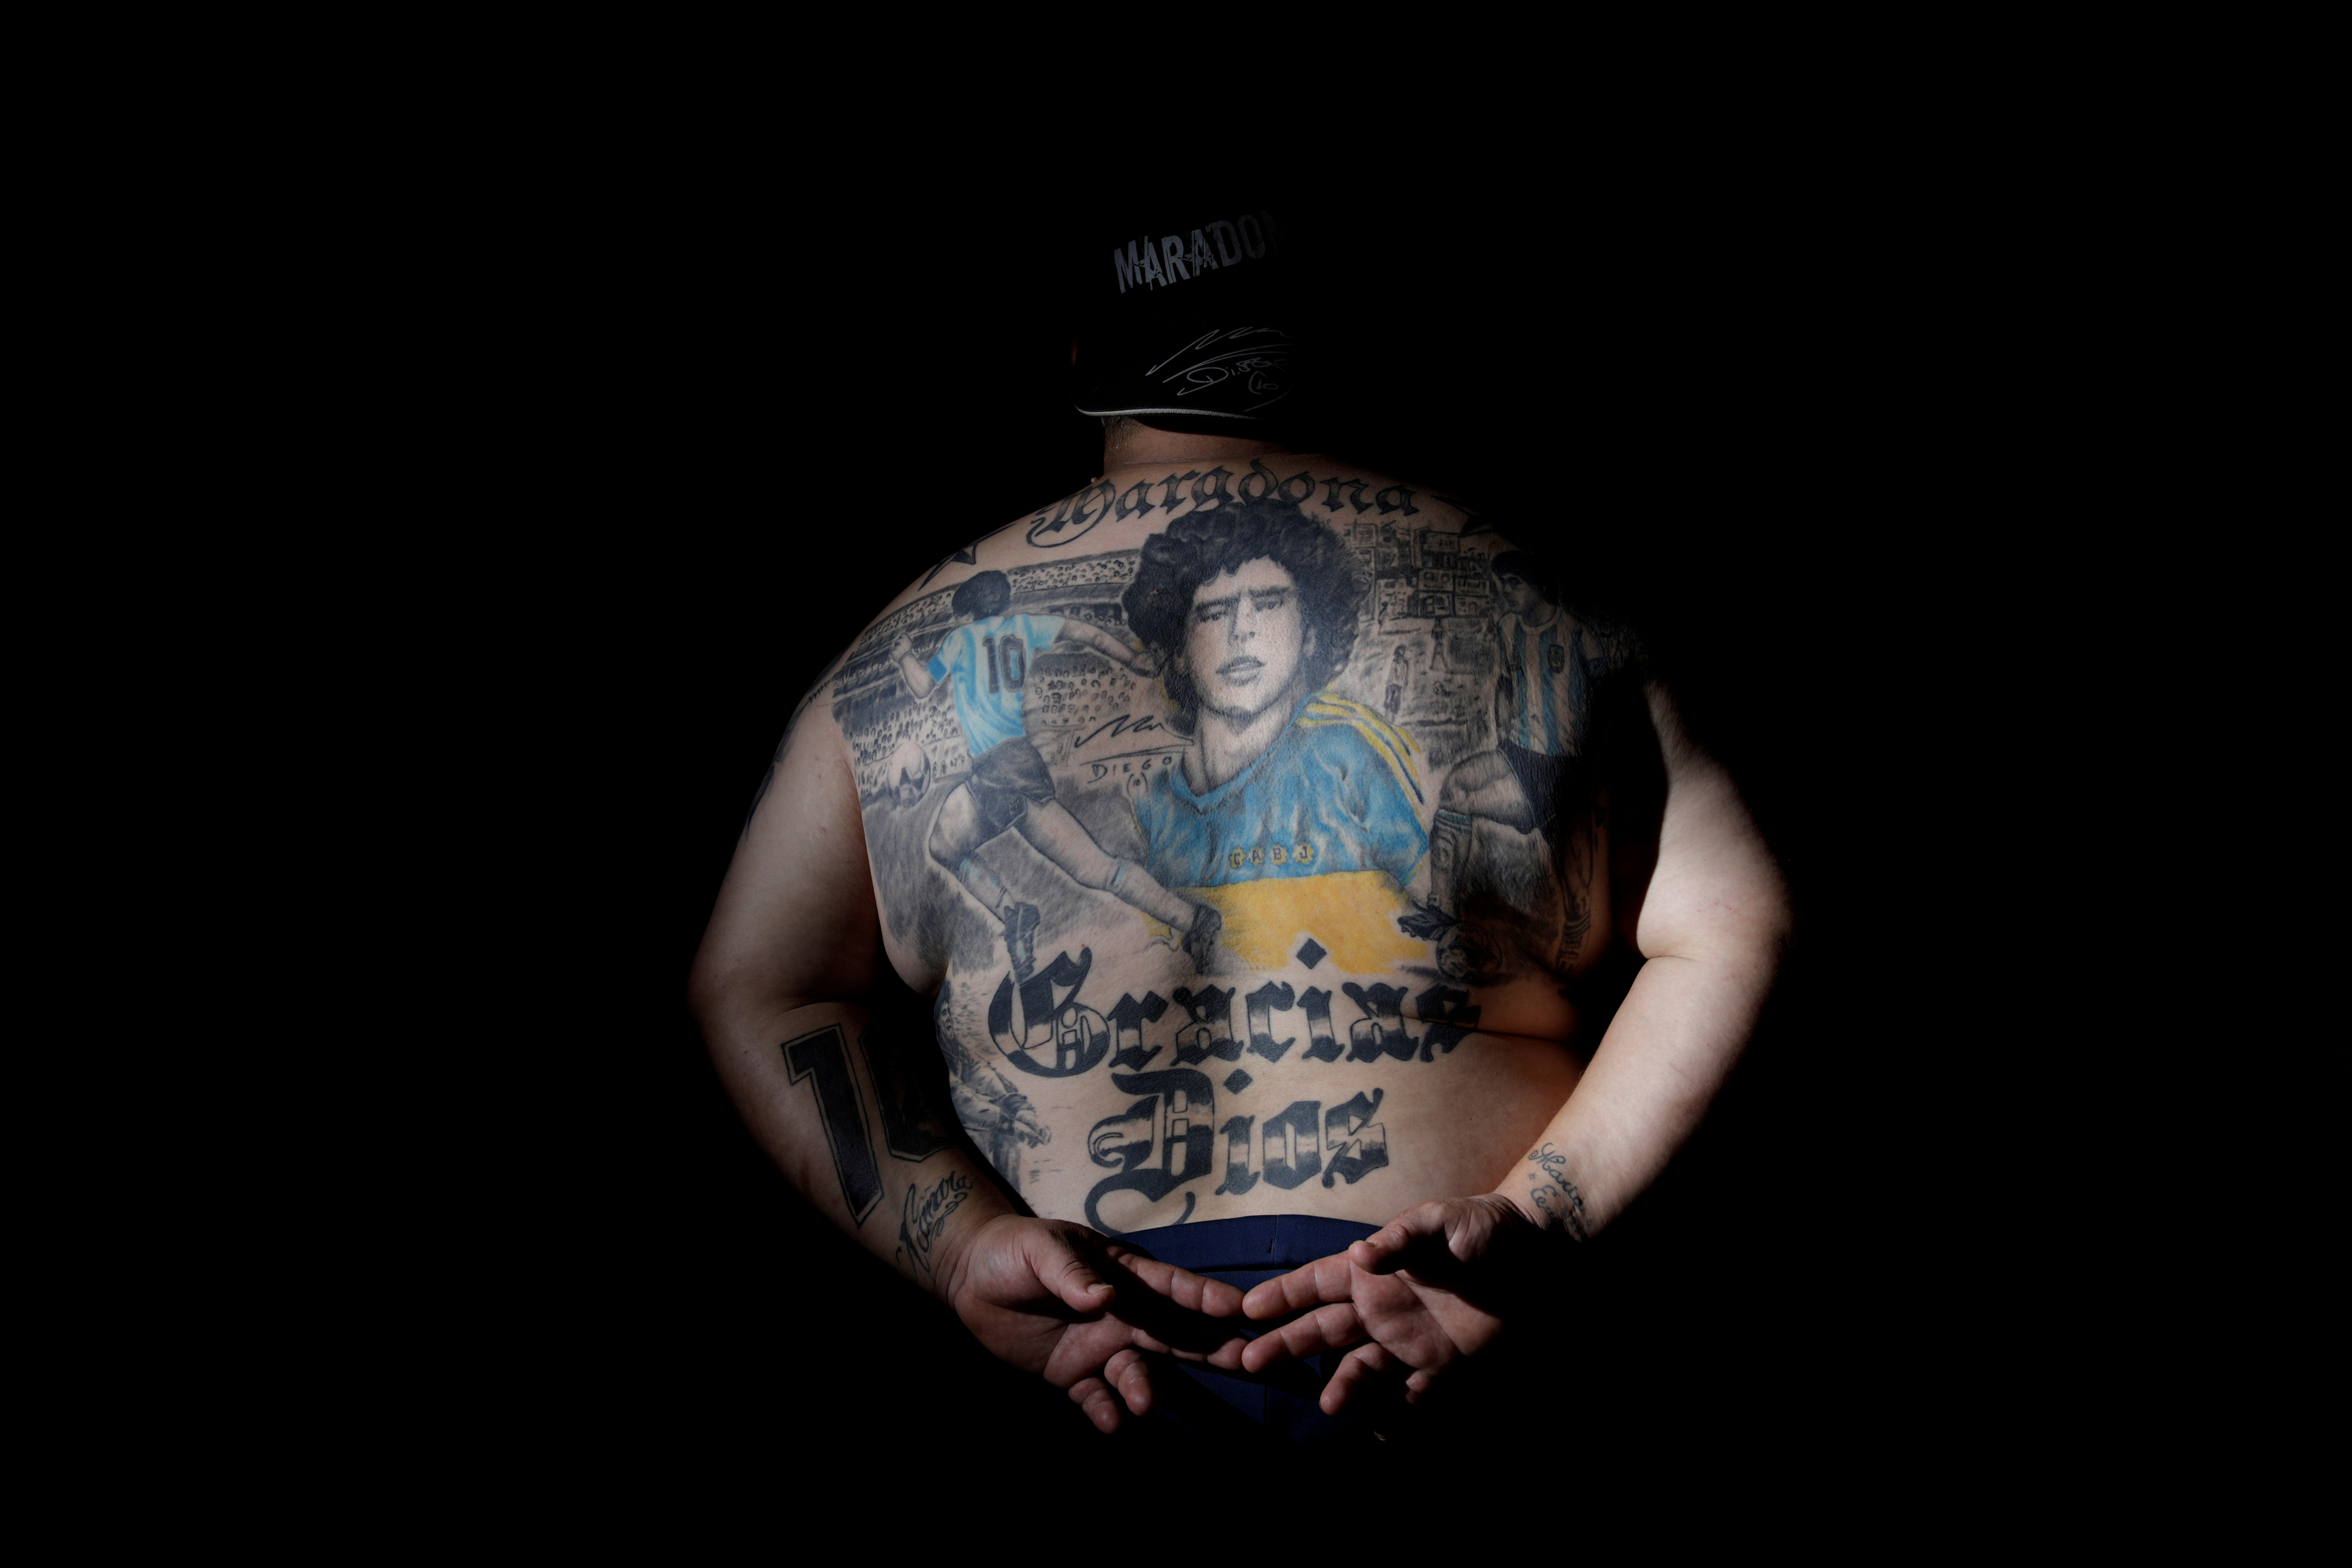 Argentinos celebraron con tatuajes su “amor eterno” por Diego Maradona: “Para nosotros no murió” - Infobae